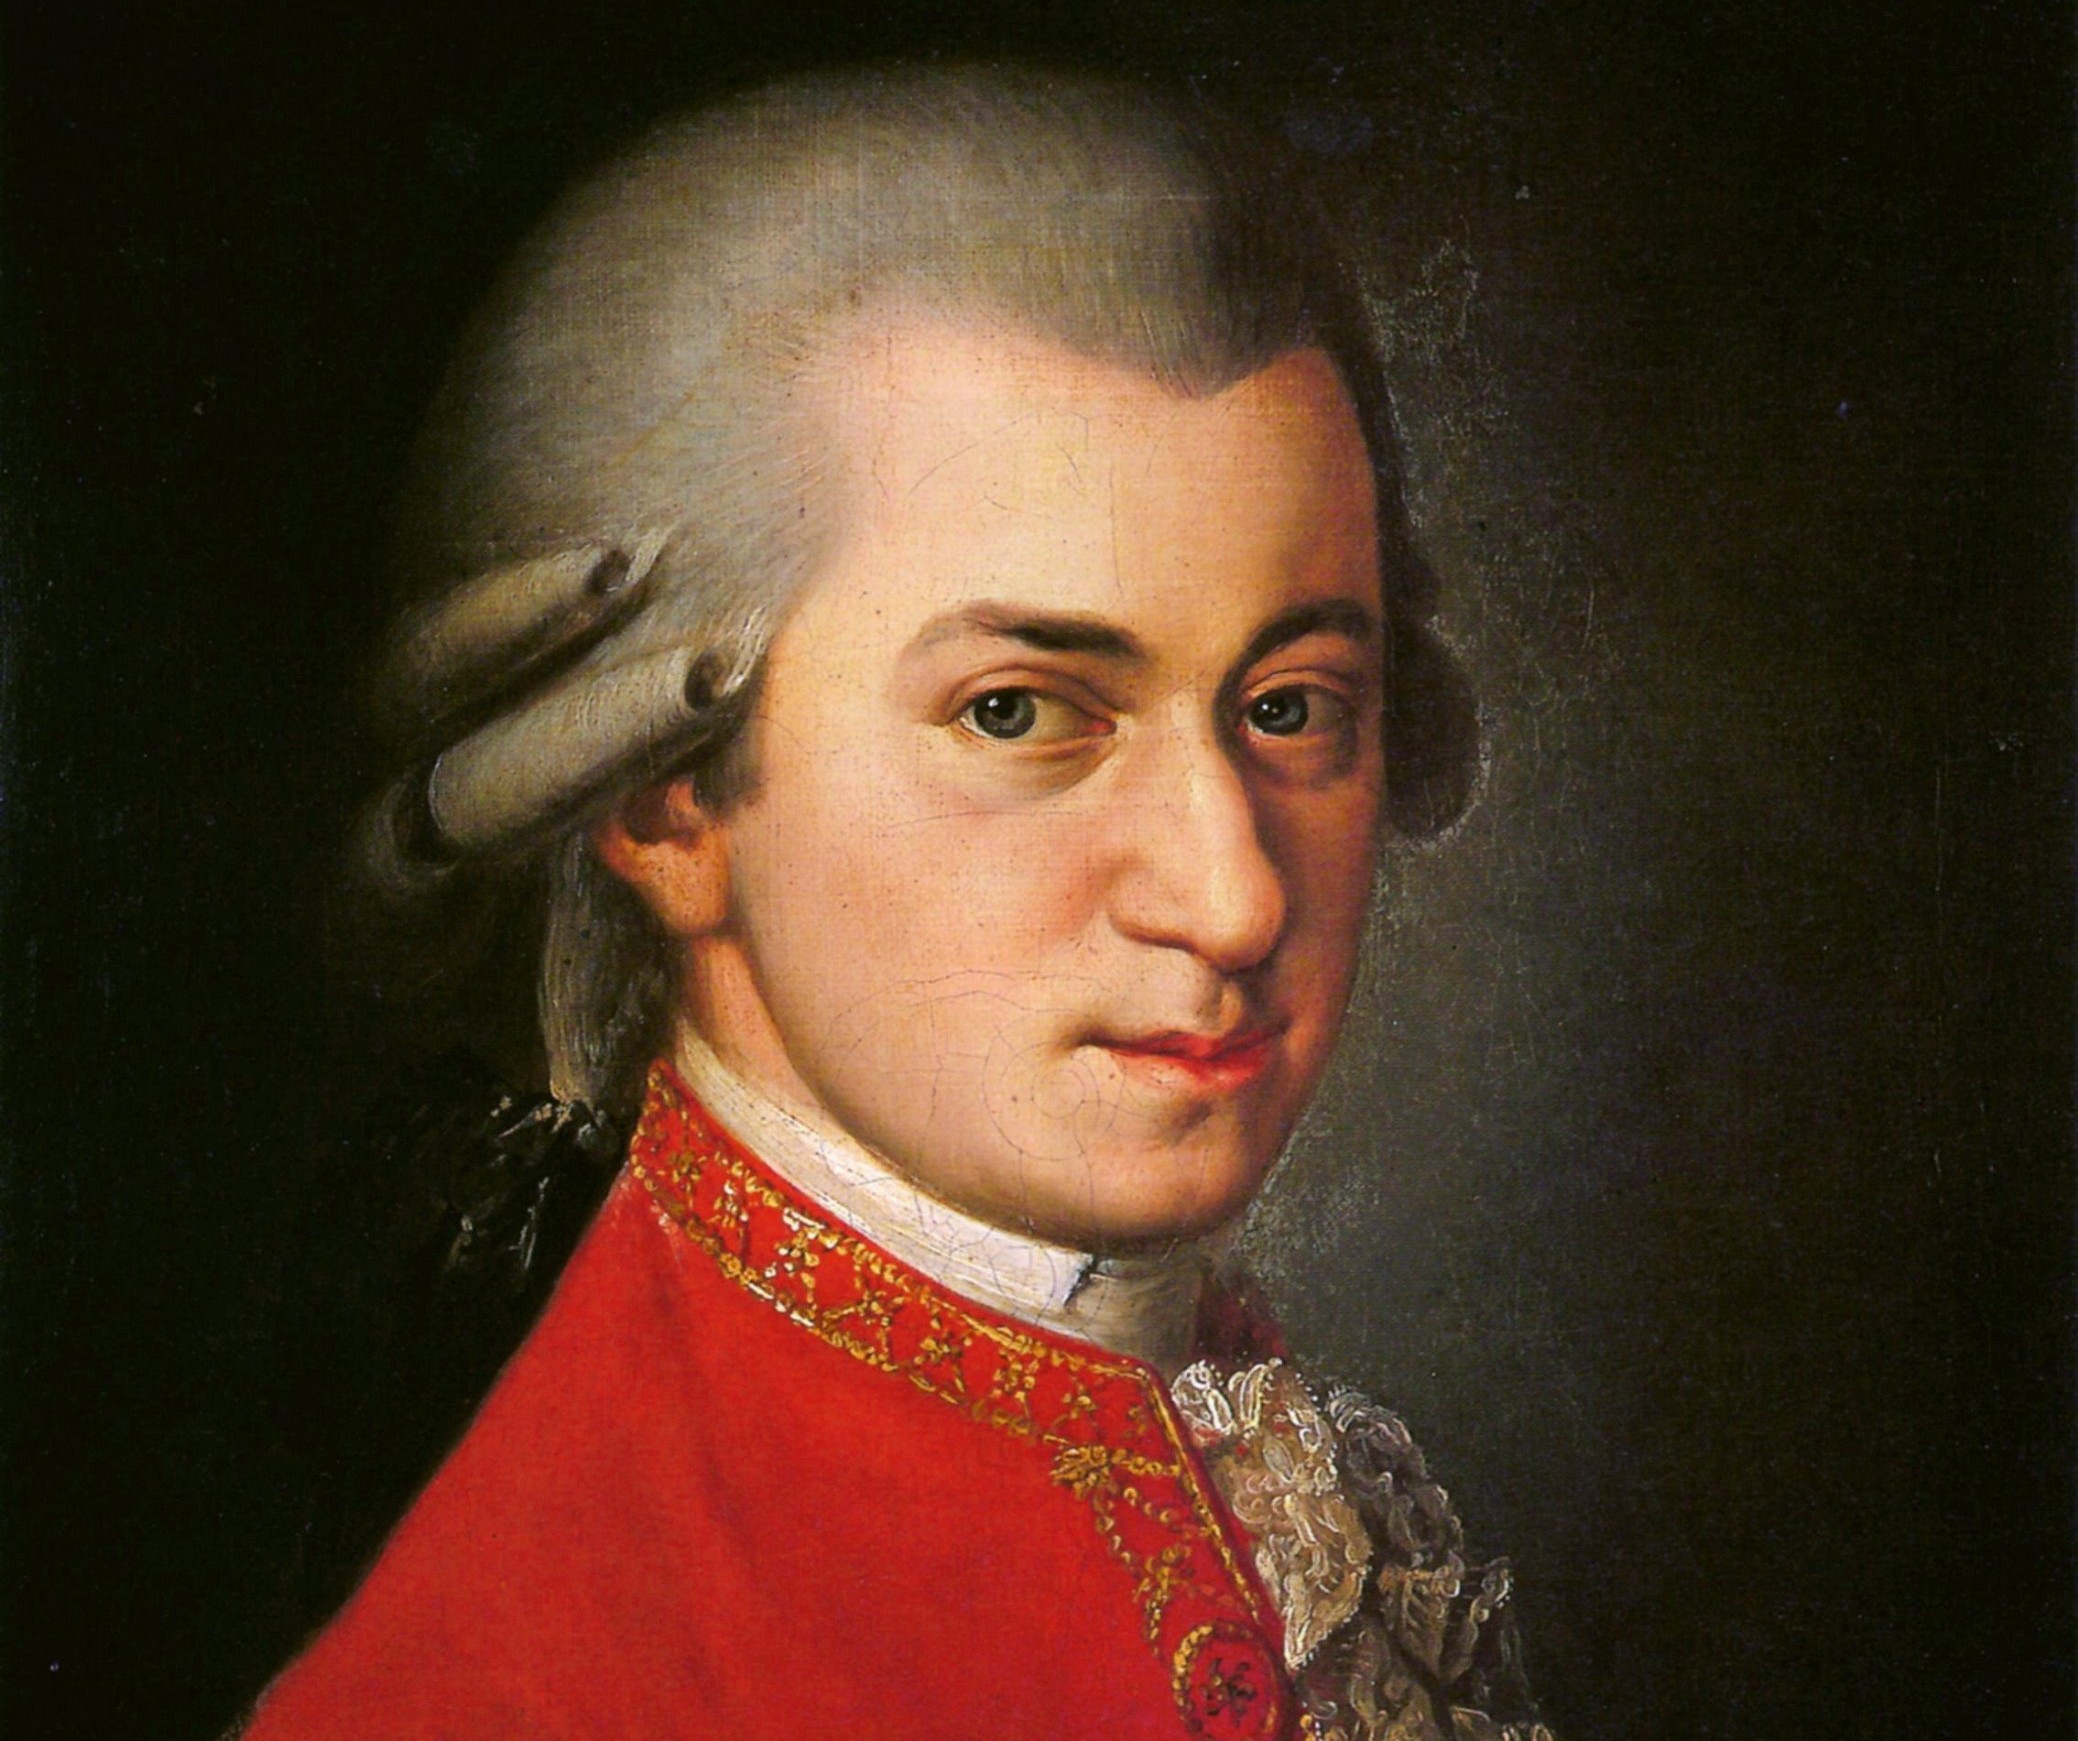 Mozart – The Magic Flute – 2 Duets